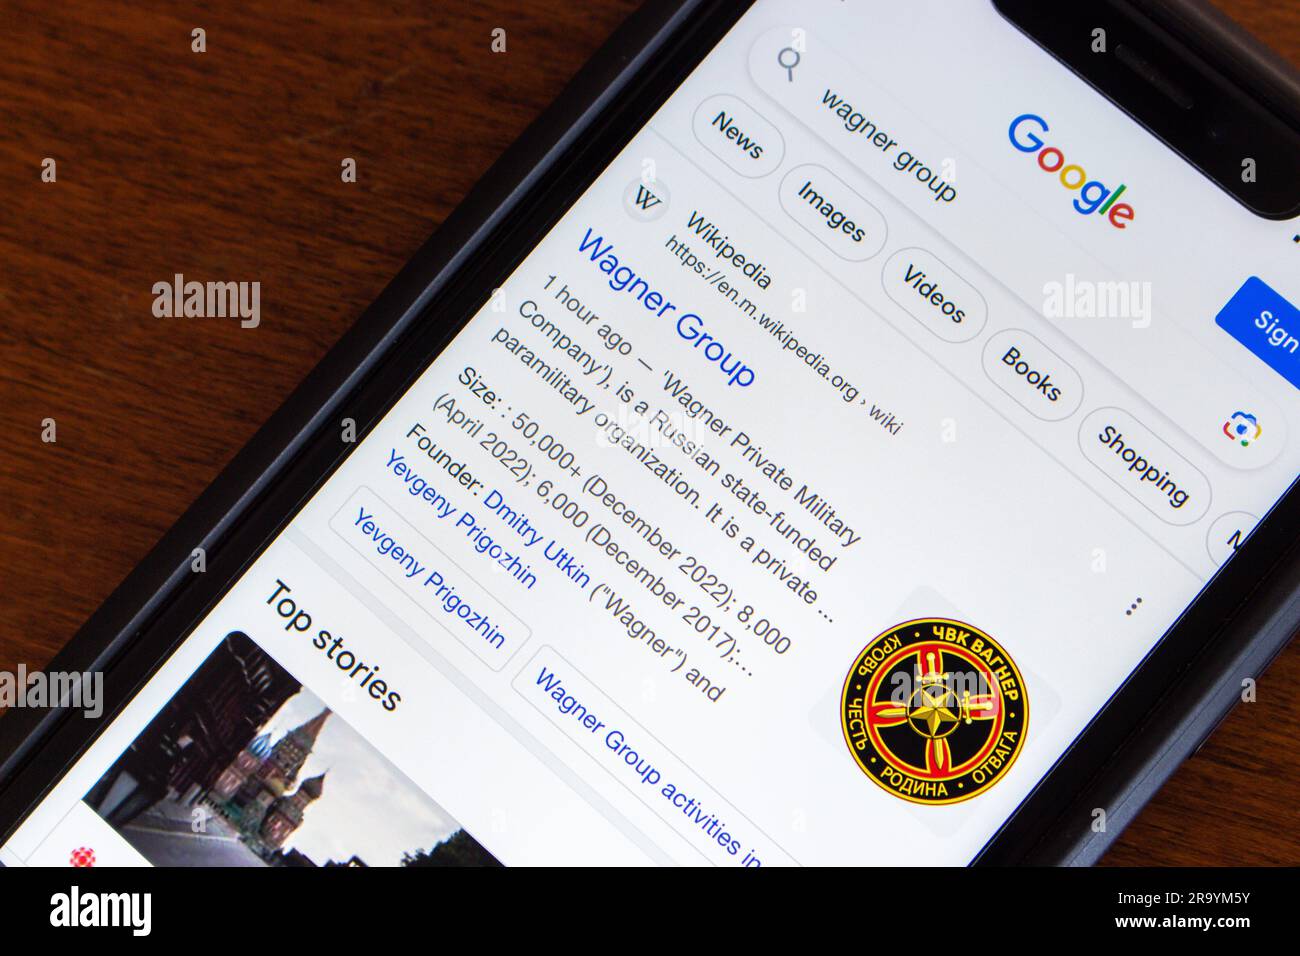 Google-Suchergebnis der Wagner Group auf einem iPhone. Die Wagner Group ist eine staatlich finanzierte russische paramilitärische Organisation (PMC Wagner) Stockfoto